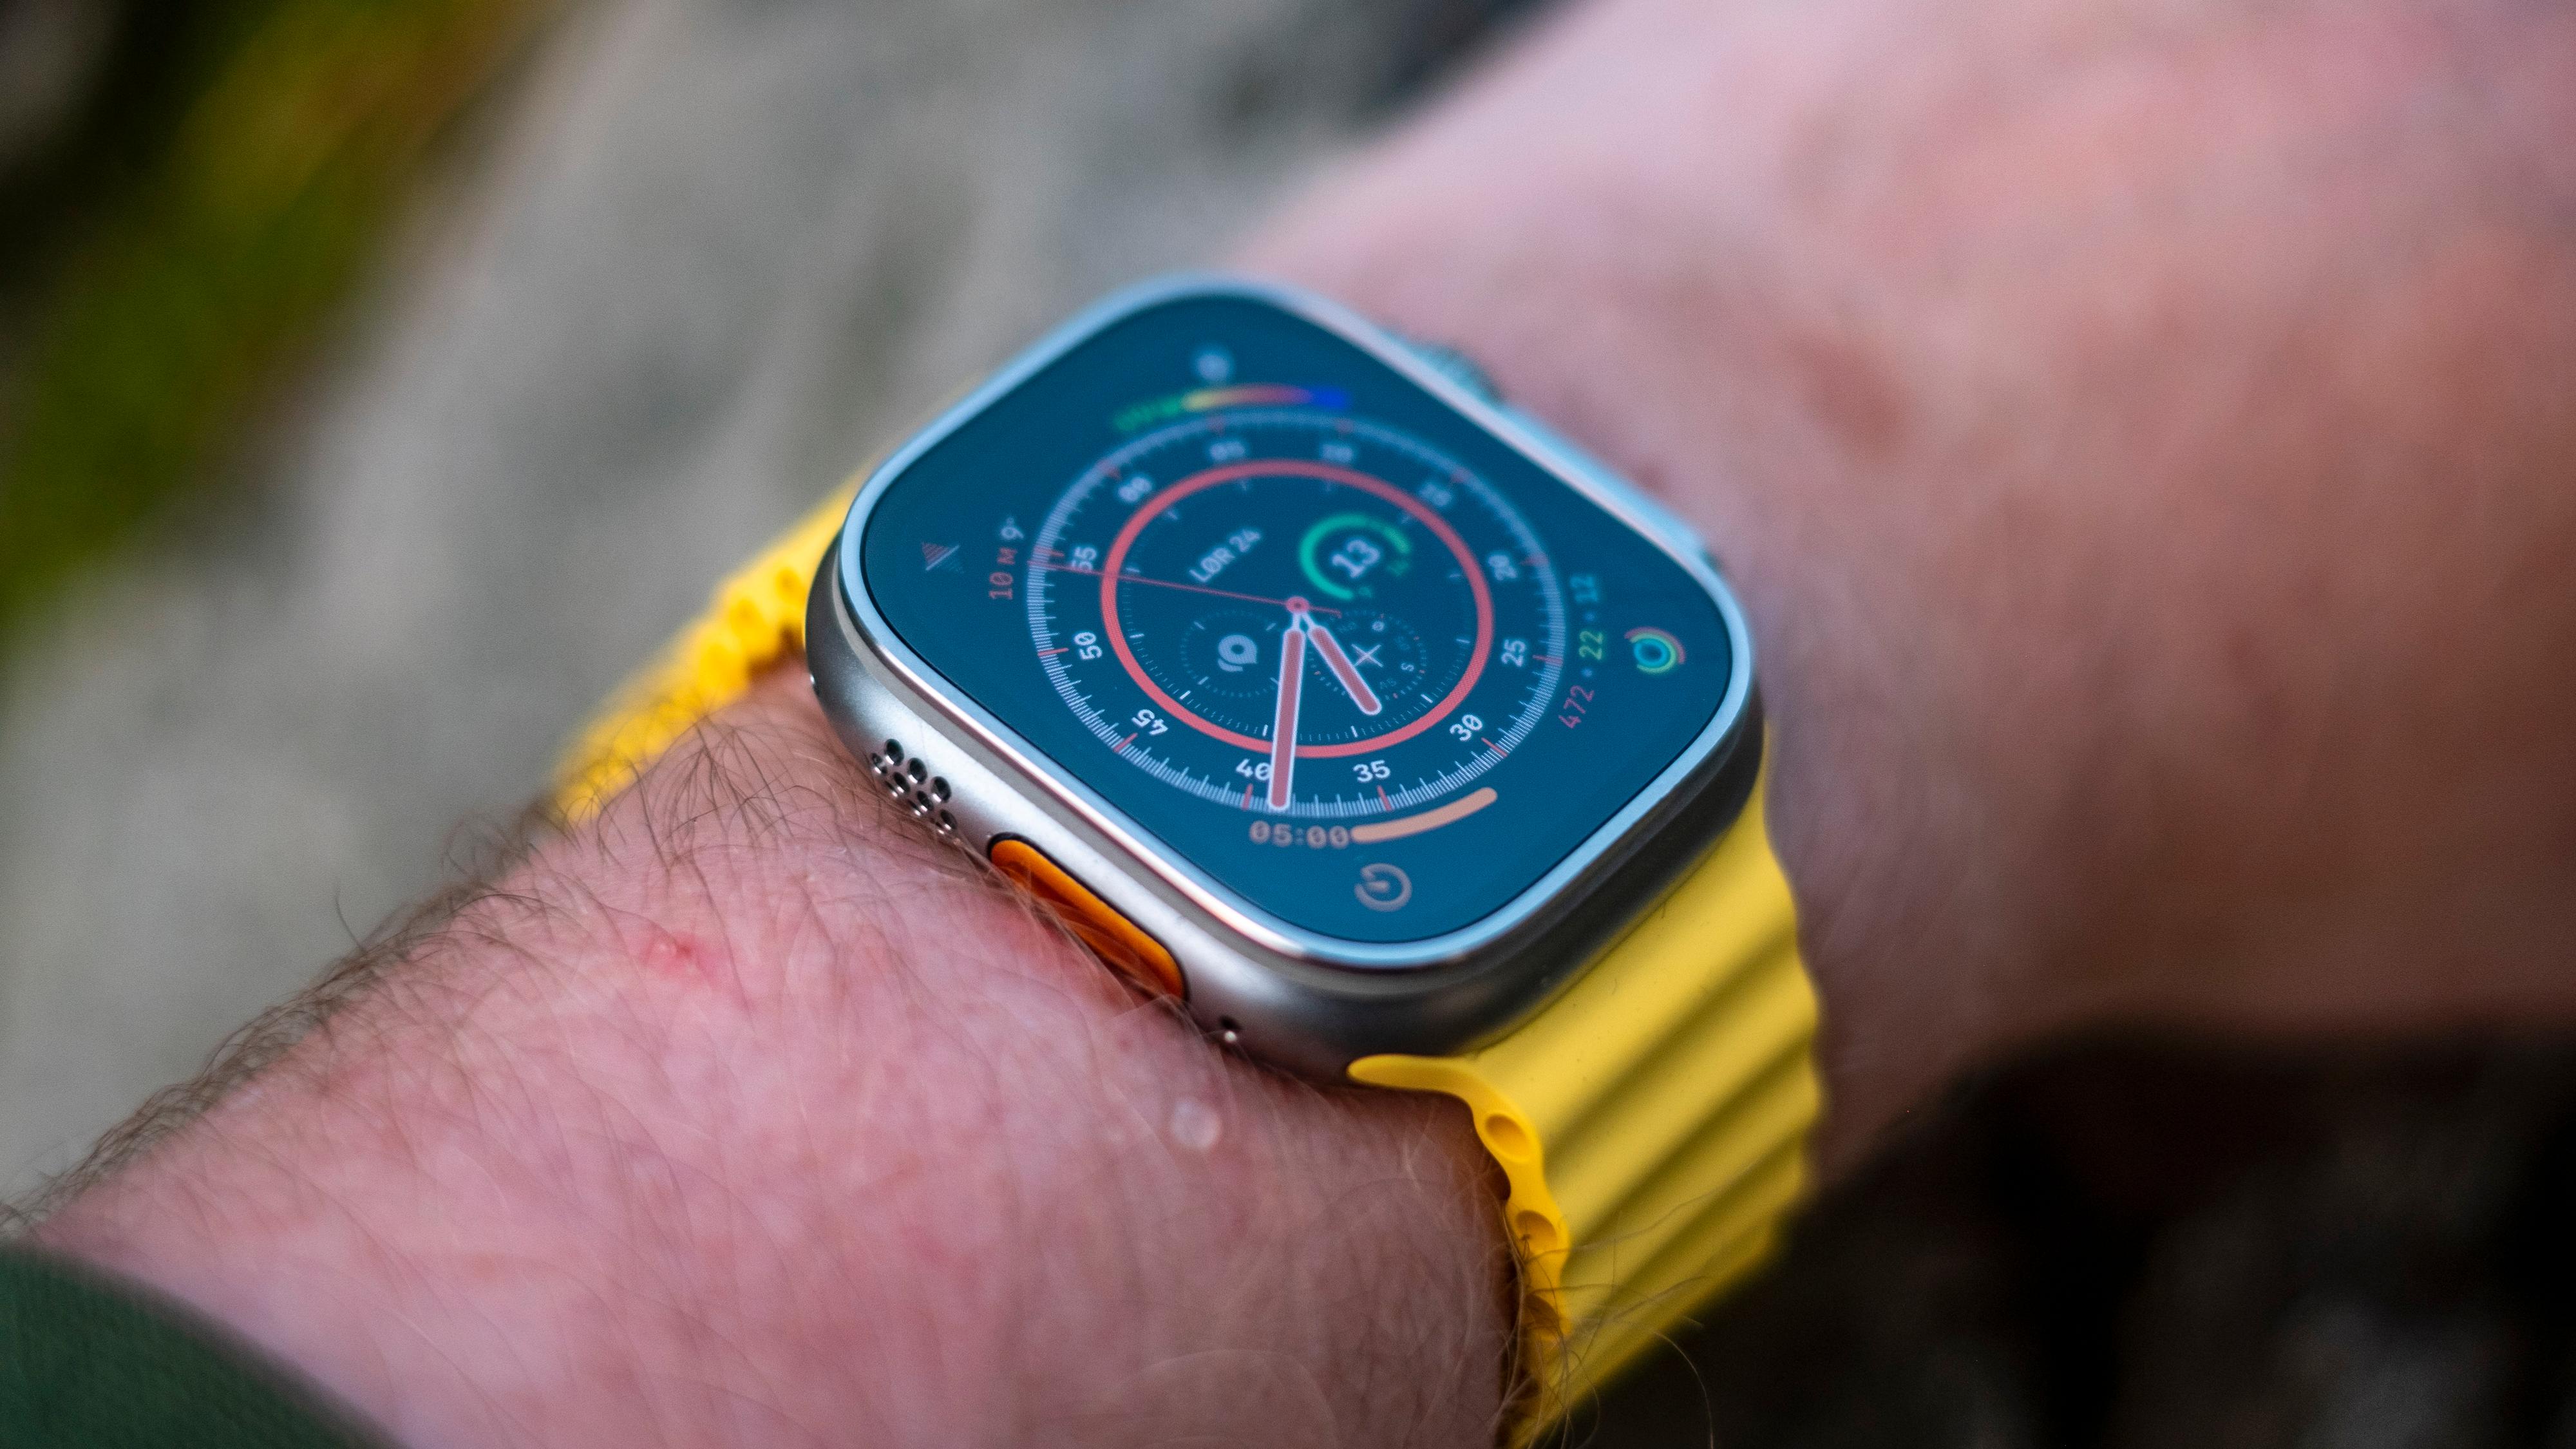 Apple Watch Ultra var den største endringen i Watch-utvalget siden smartklokken først ble lansert. Nå kan det komme større endringer til alle Watch-variantene.